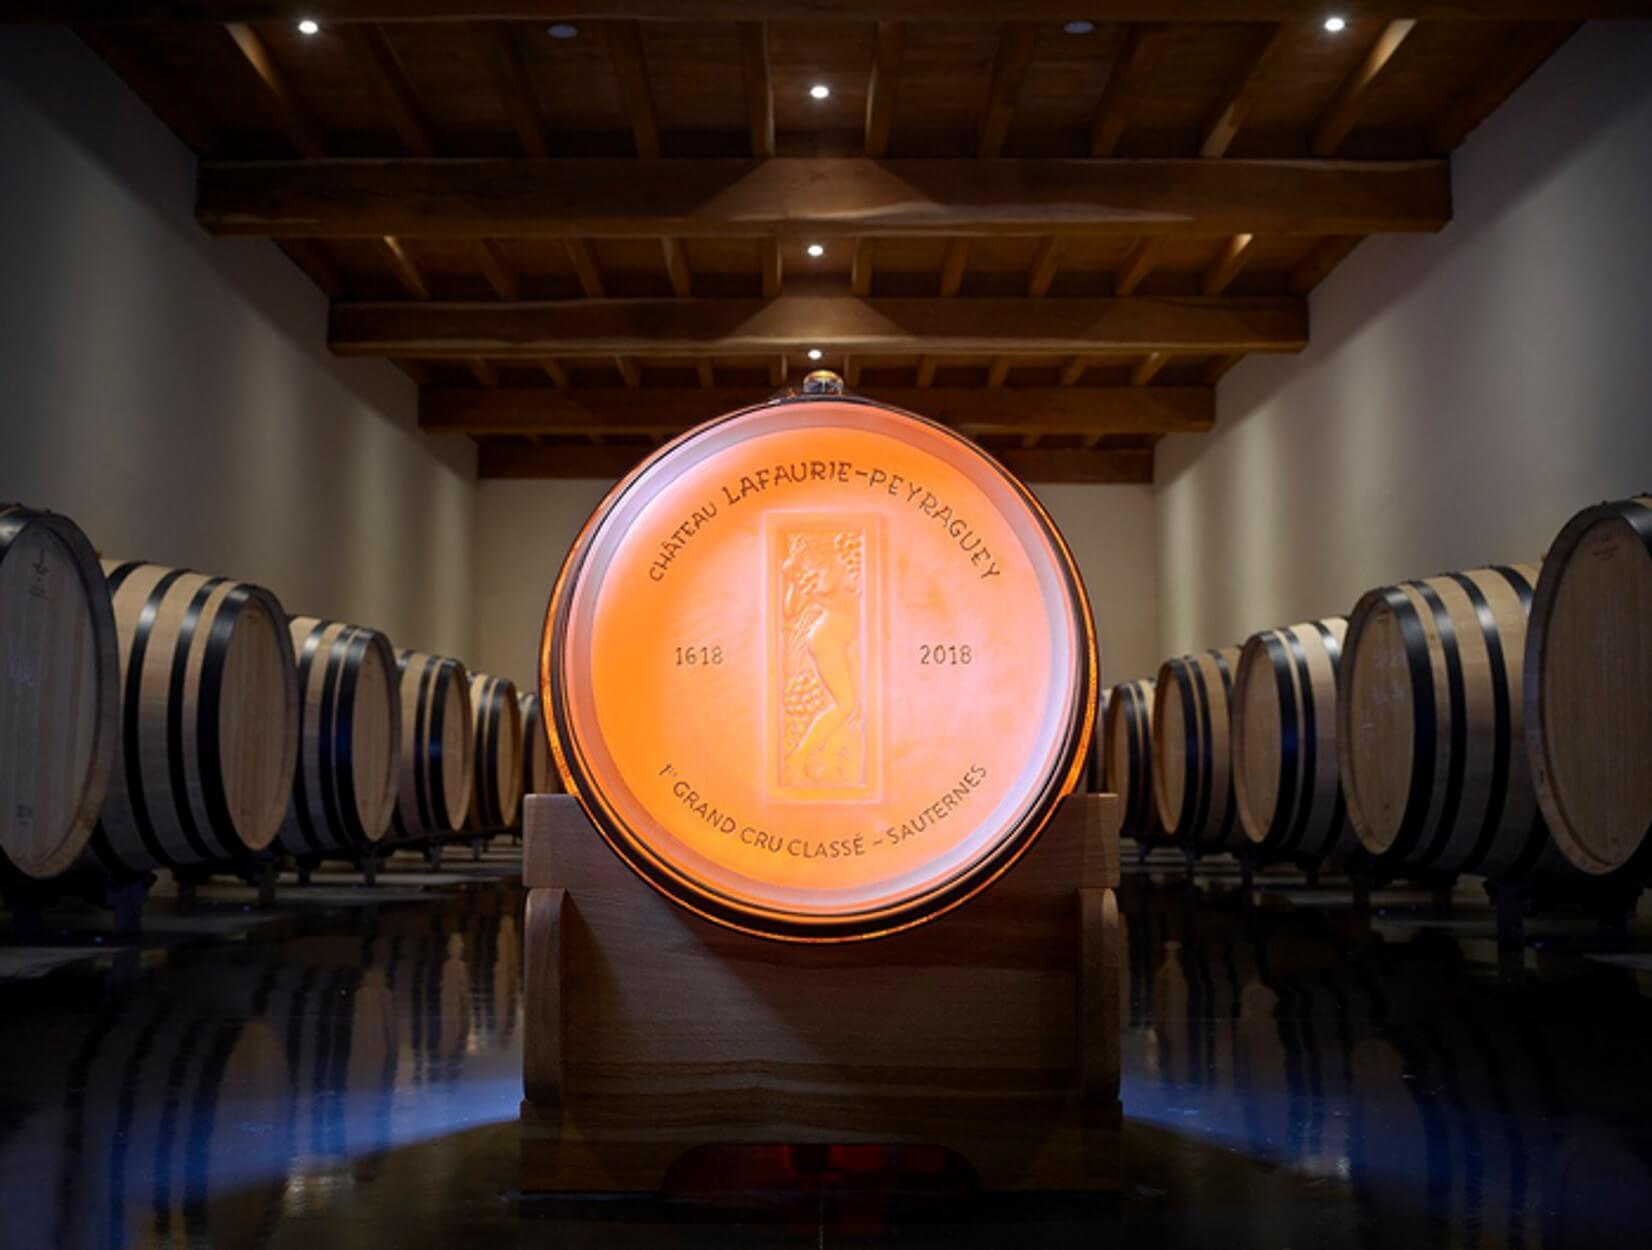 Το μοναδικό κρυστάλλινο βαρέλι στον κόσμο – Περιέχει γαλλικό κρασί 200 ετών